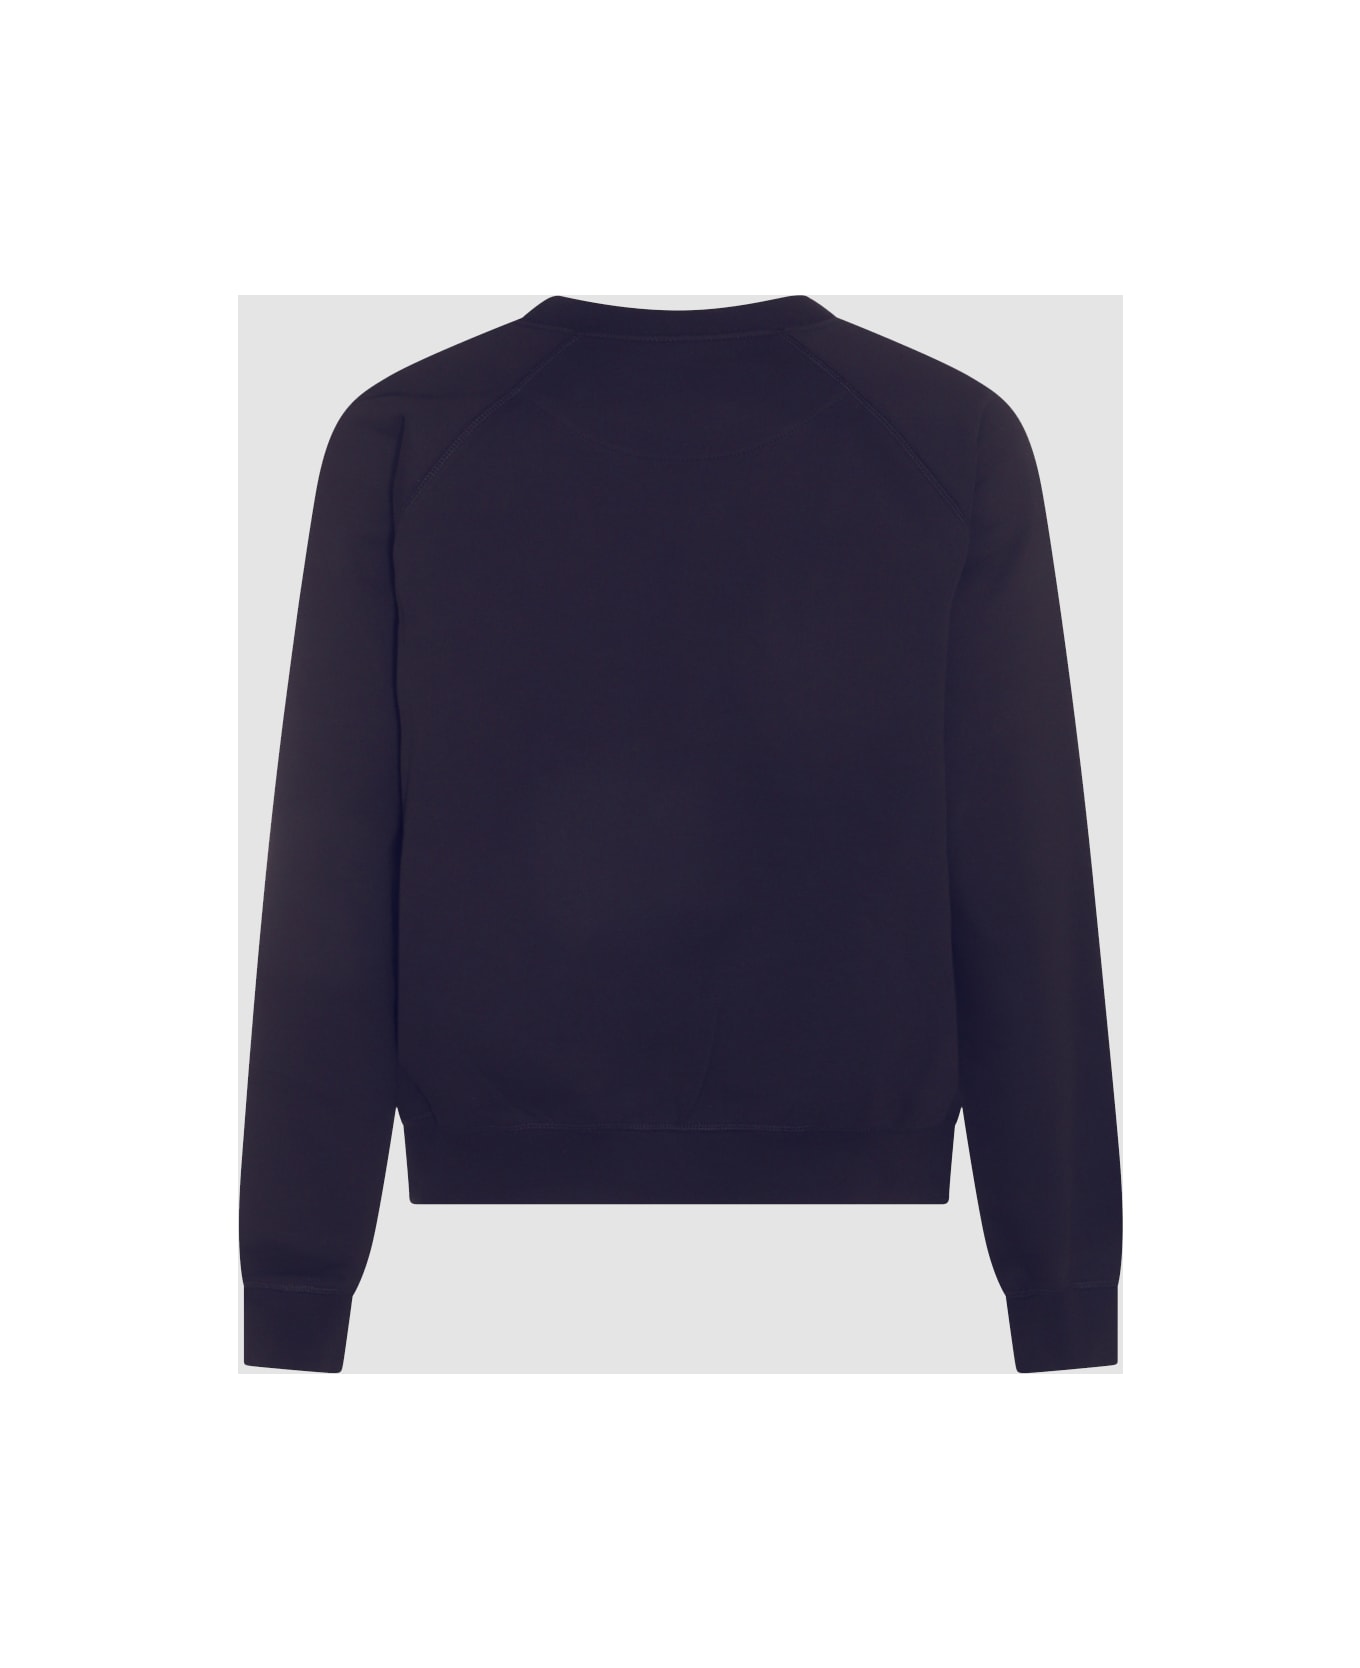 Vivienne Westwood Navy Blue Cotton Sweatshirt - Blue